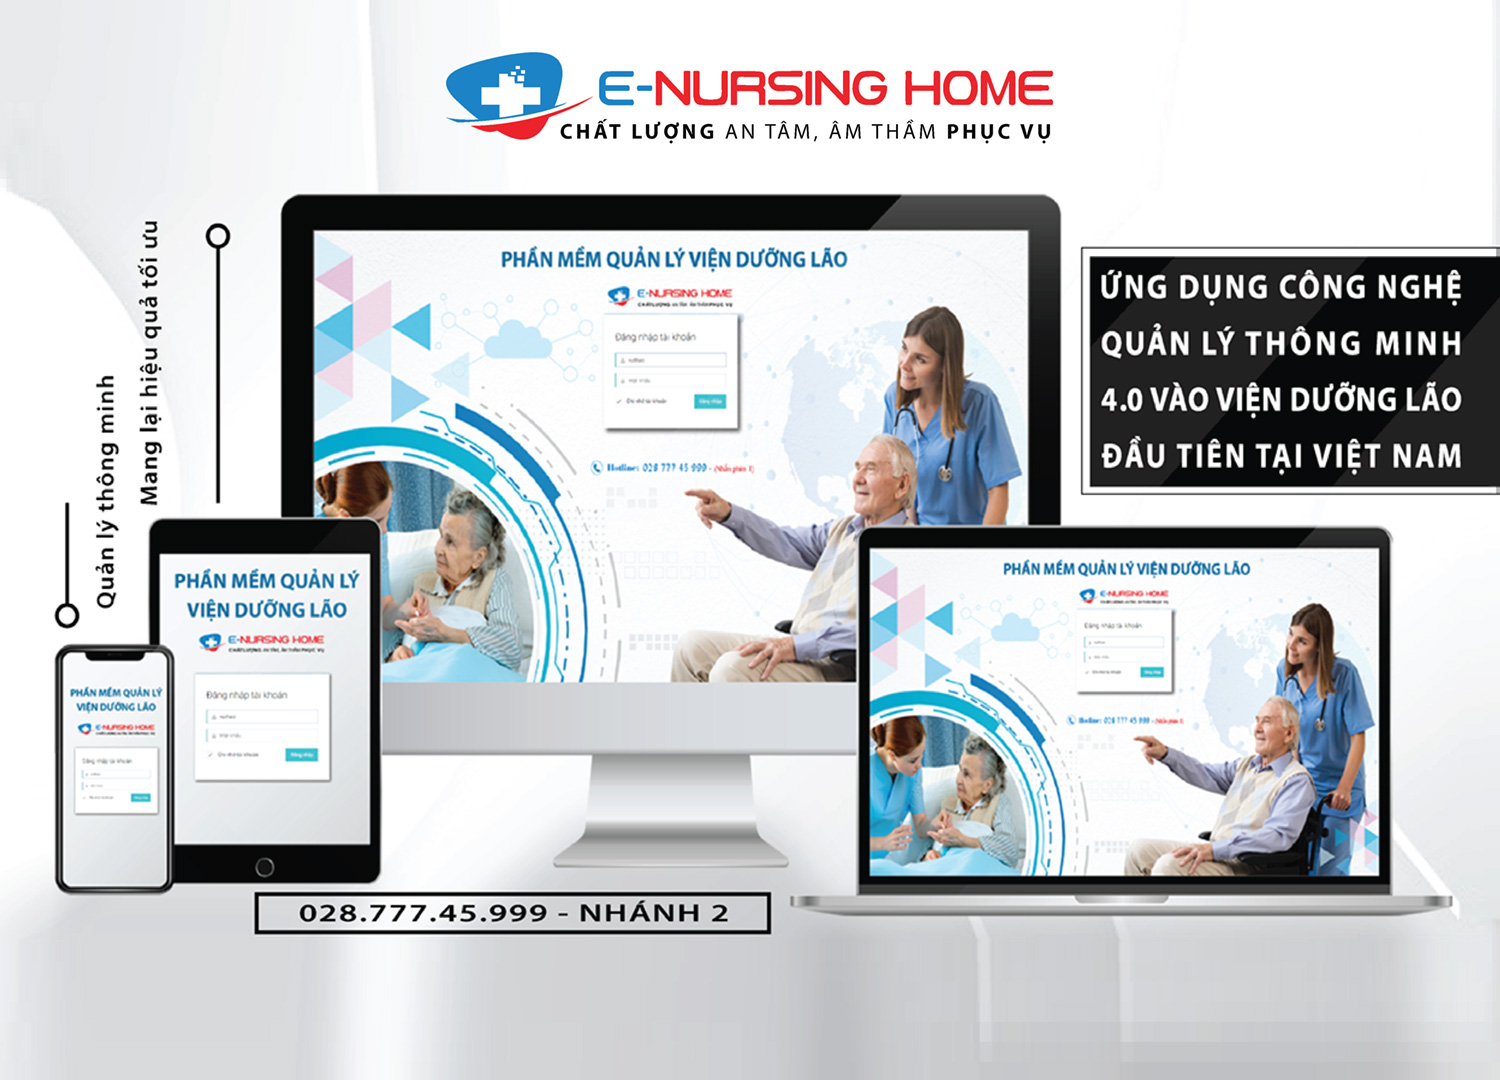 Phần mềm quản lý viện dưỡng lão E-Nursinghome